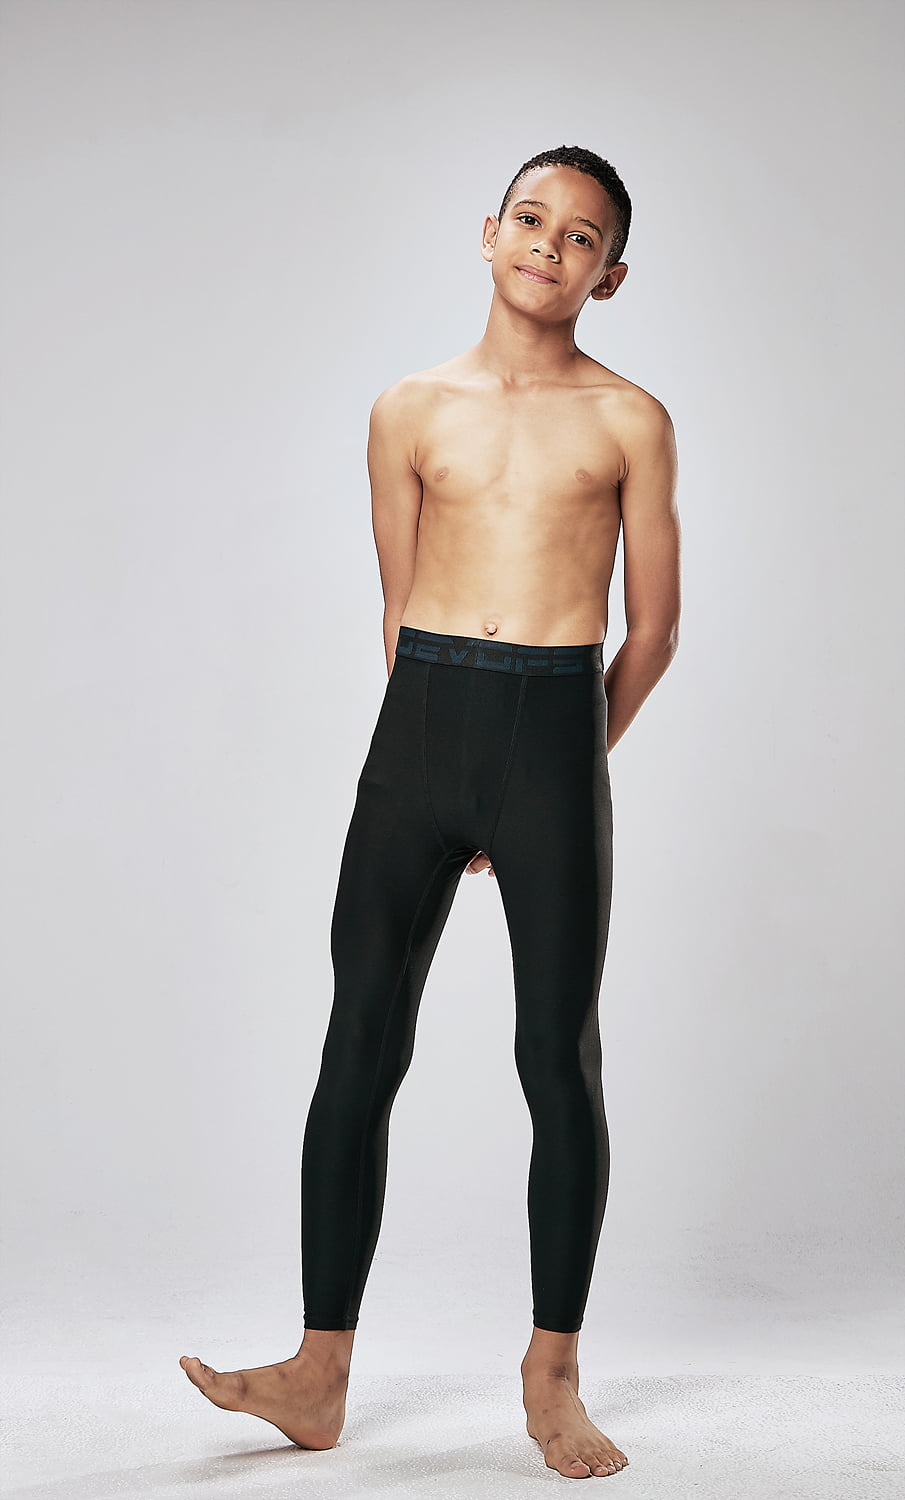 GetUSCart- DEVOPS 2 Pack Men's Compression Pants Athletic Leggings (Large,  Black/Orange)